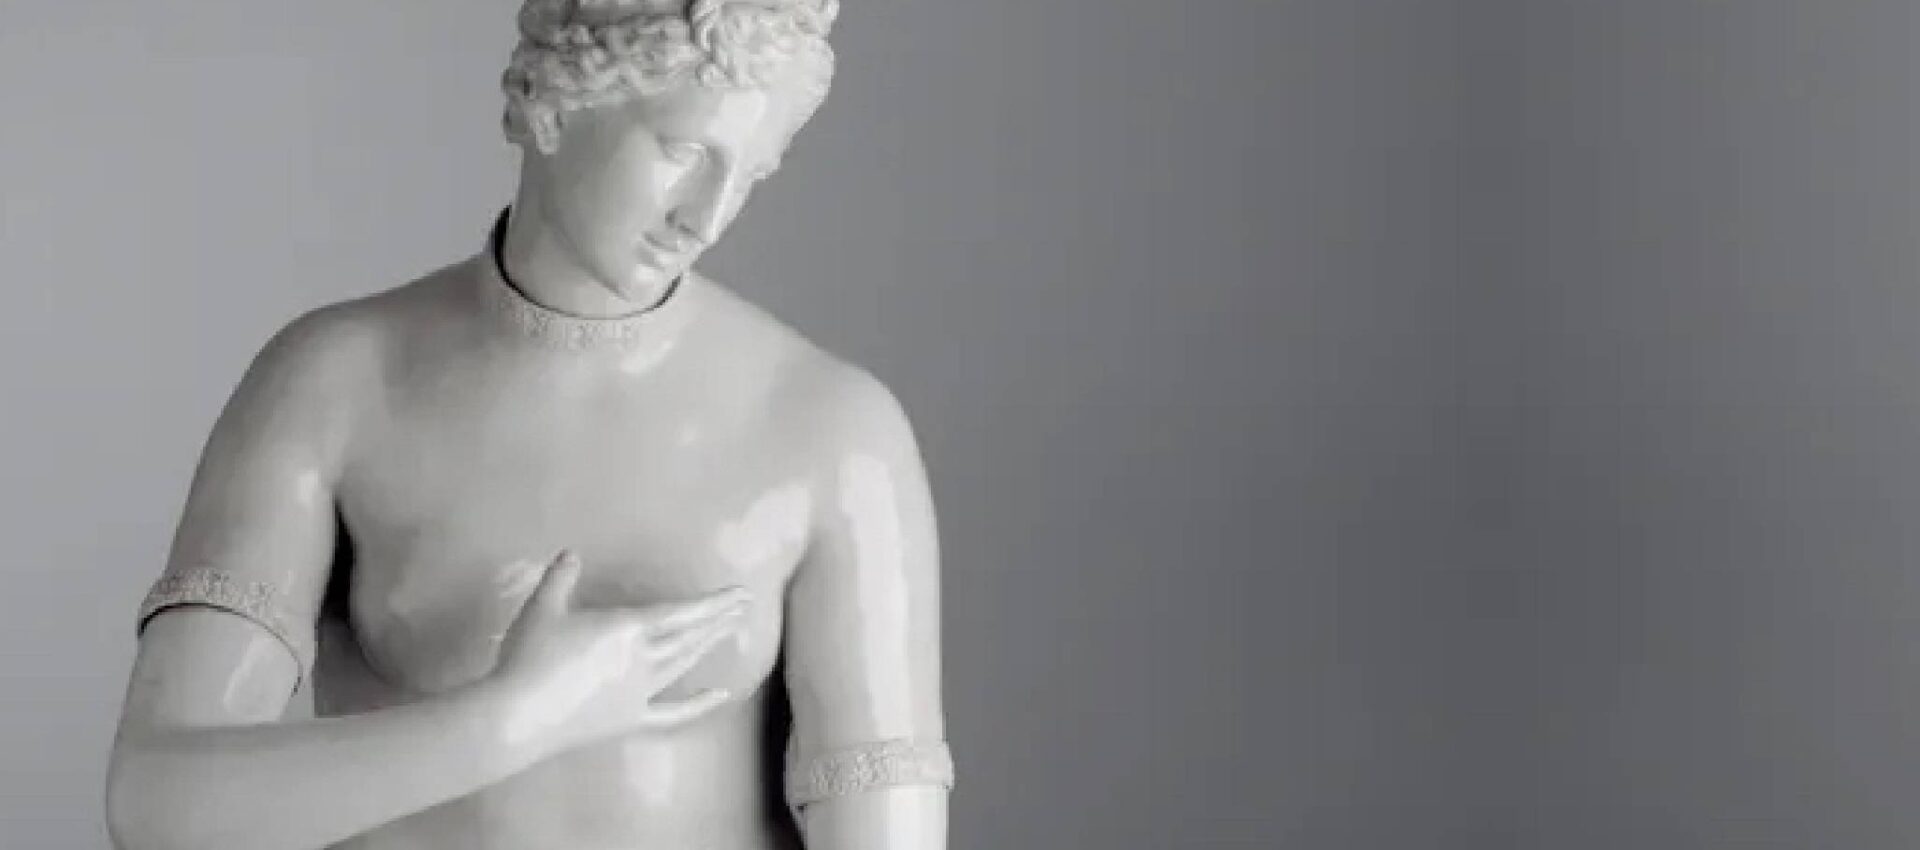 Venere de' Medici manifattura Ginori di Doccia, scultura in porcellana bianca raffigurante una figura classica con lo sguardo basso, mano sul petto, capelli ricci, tratti somatici definiti, sfondo neutro.